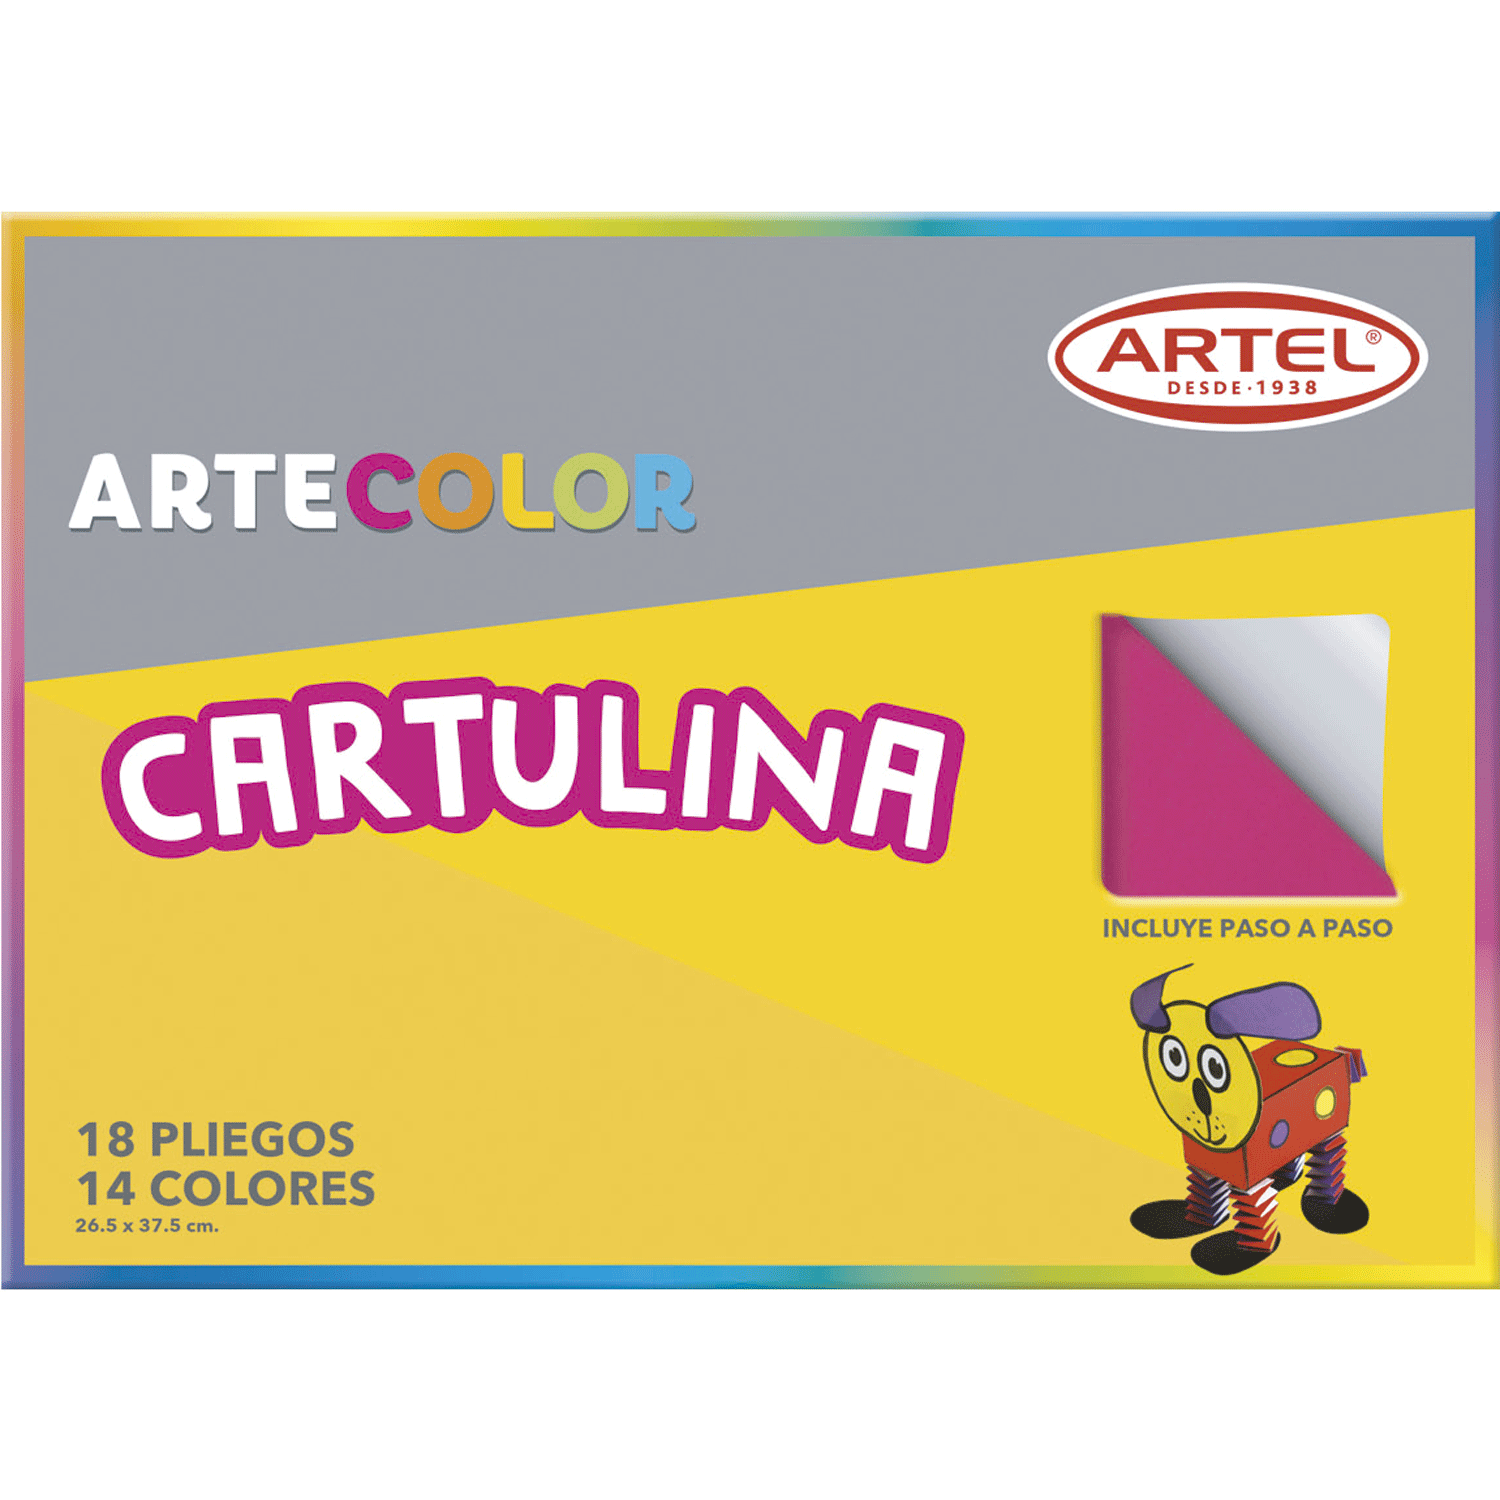 Omitido Ceder Tutor Cartulinas color carpeta 18 pliegos de colores 26.5 x 37.5 cm c/u. |  Jumbo.cl